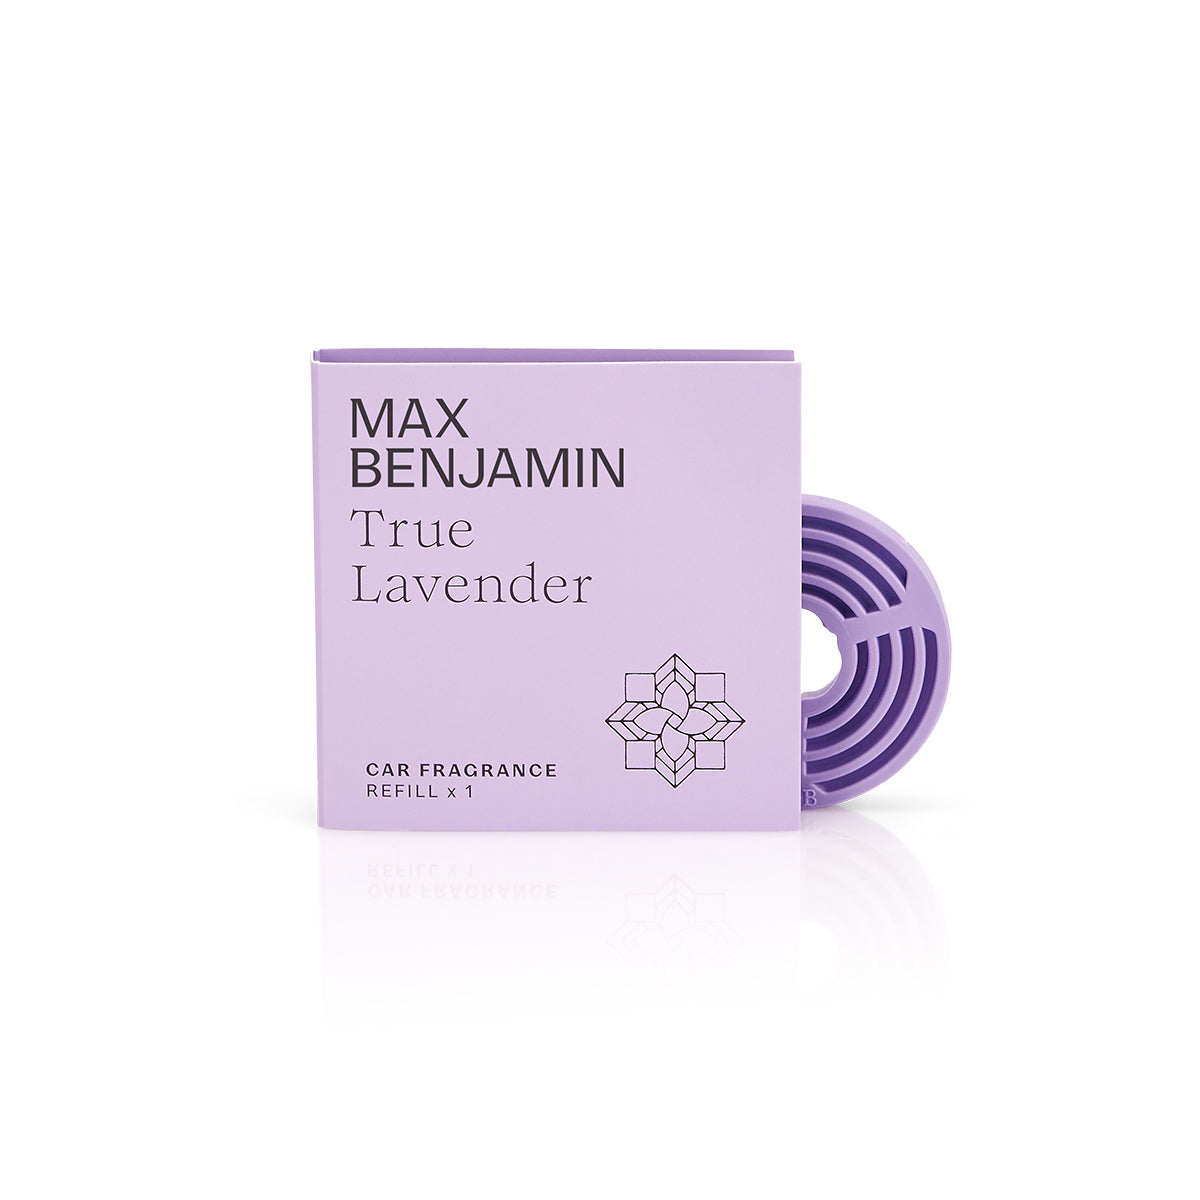 True Lavender Refill for Car Fragrance - Max Benjamin